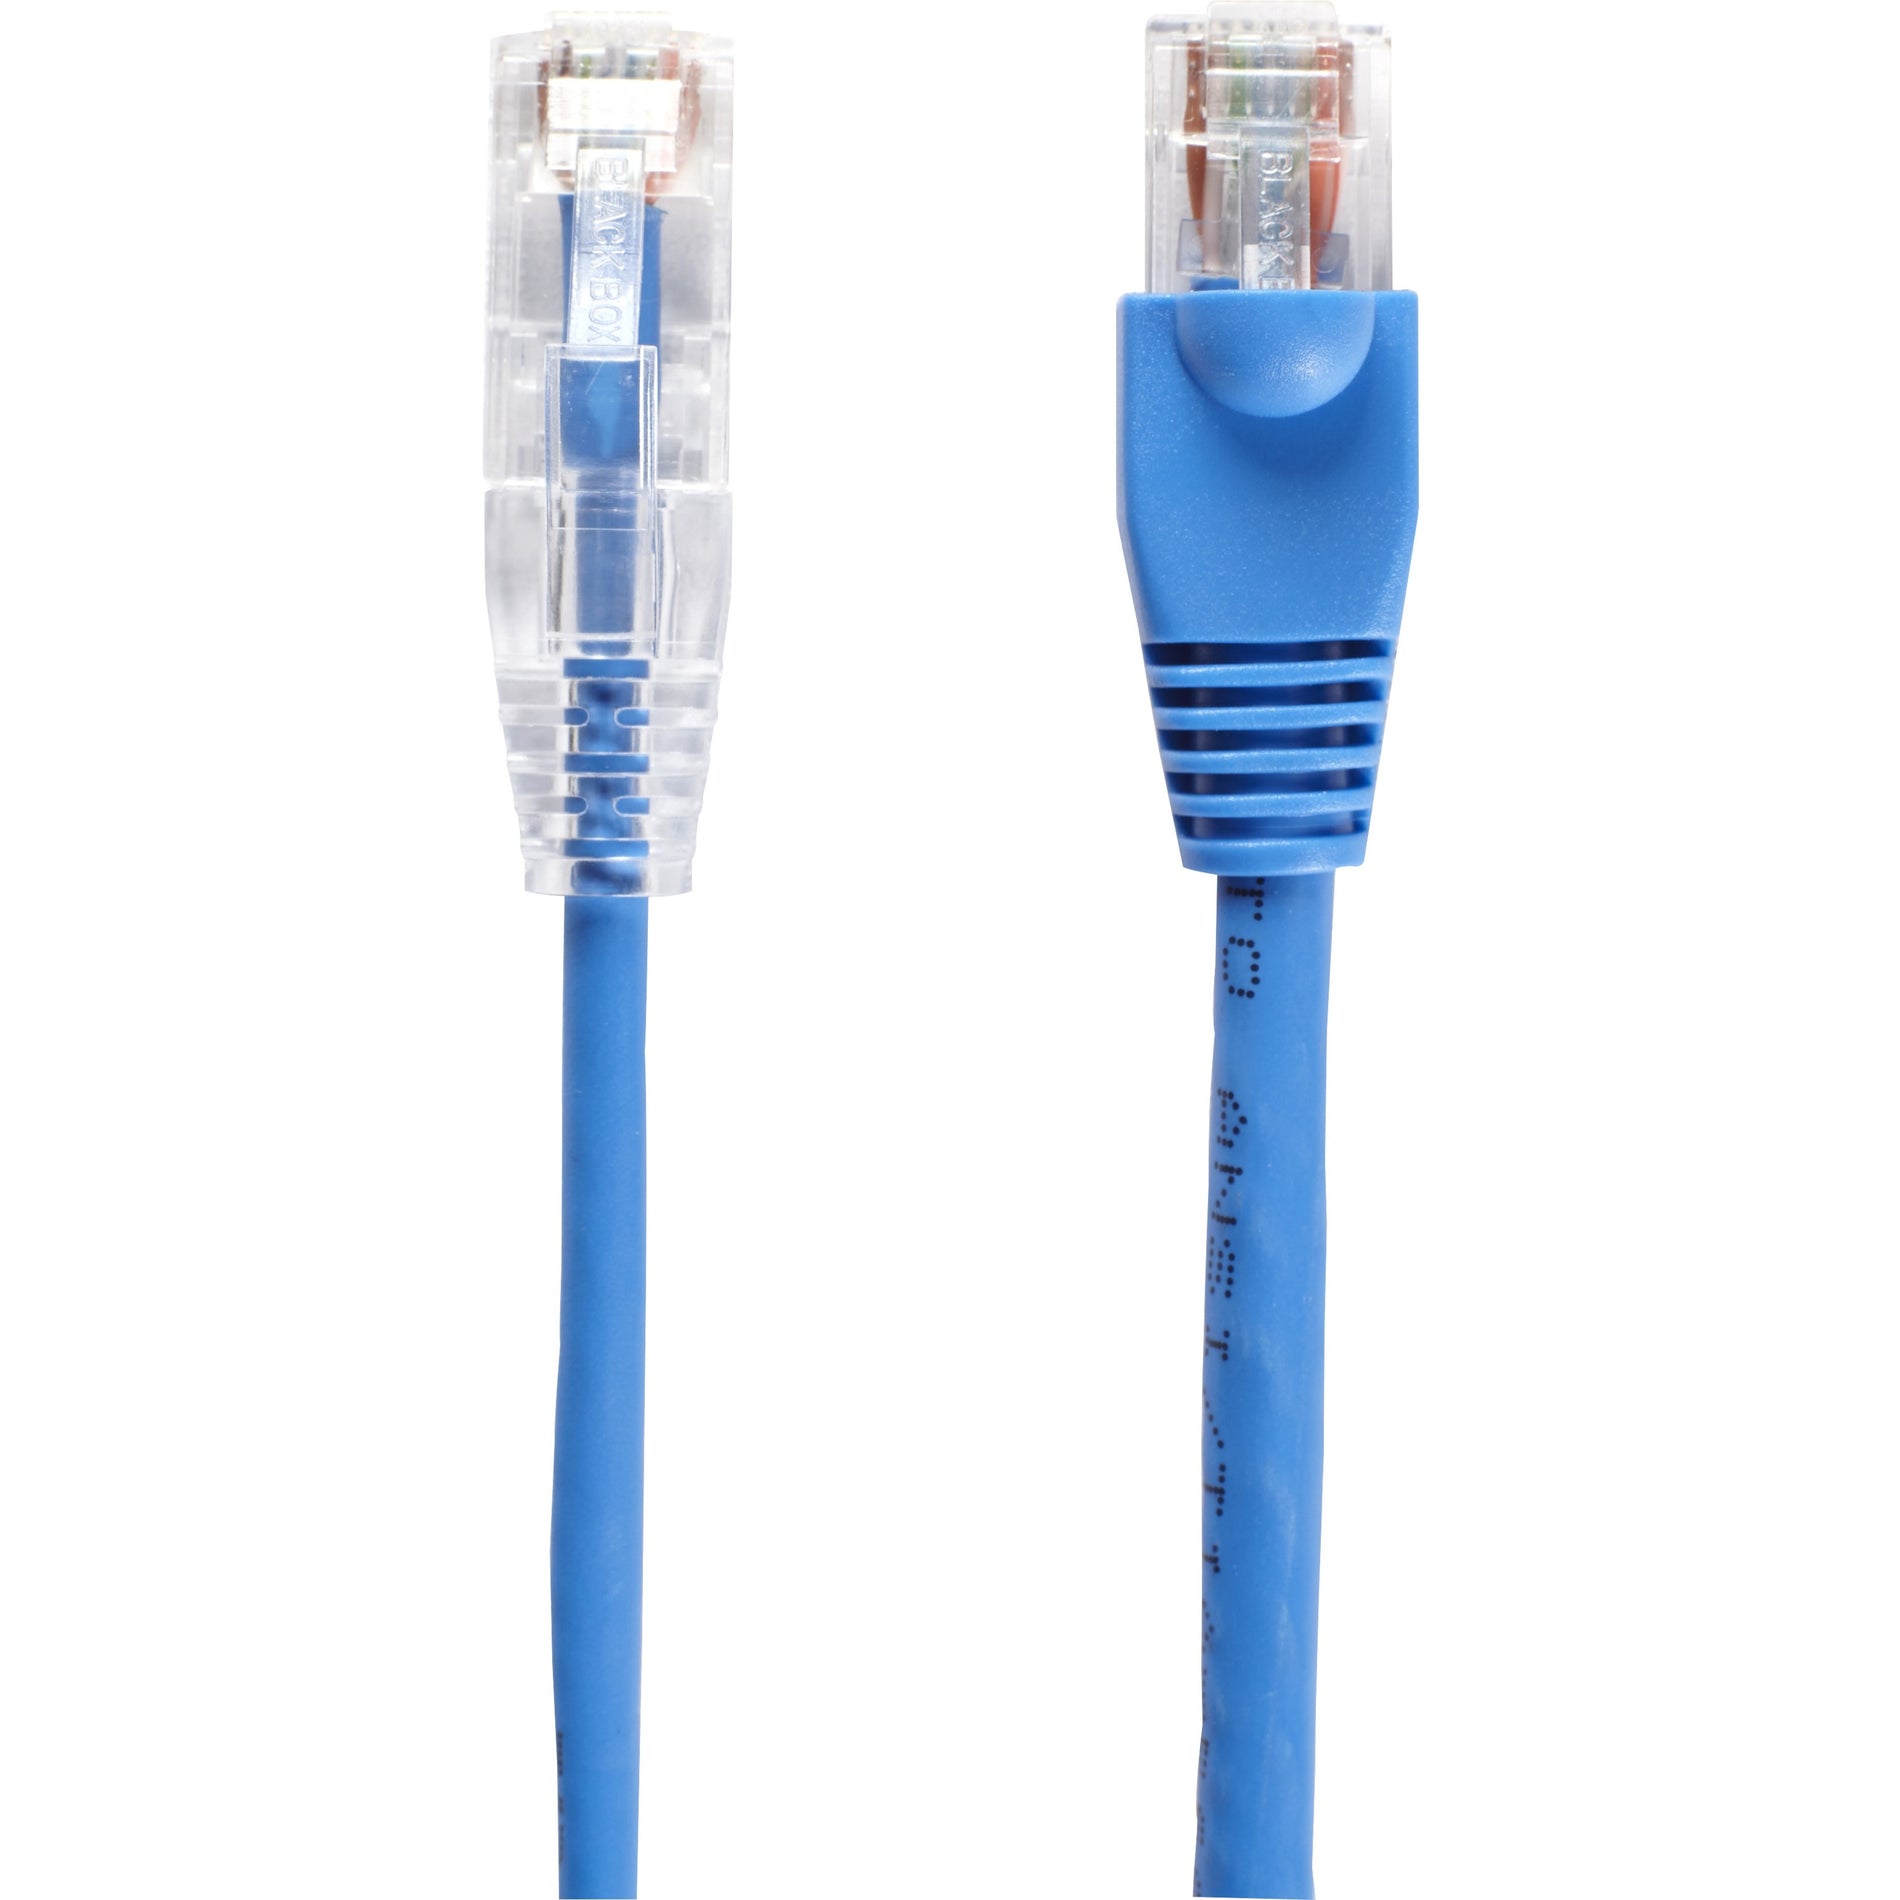 Black Box C6PC28-BL-05 Slim-Net Cat.6 UTP Patch Network Cable 5 ft Snagless Boot 10 Gbit/s Data Transfer Rate Marca: Black Box Cable de red de parche Cat.6 UTP Slim-Net C6PC28-BL-05 5 pies bota sin enganches Tasa de transferencia de datos de 10 Gbit/s